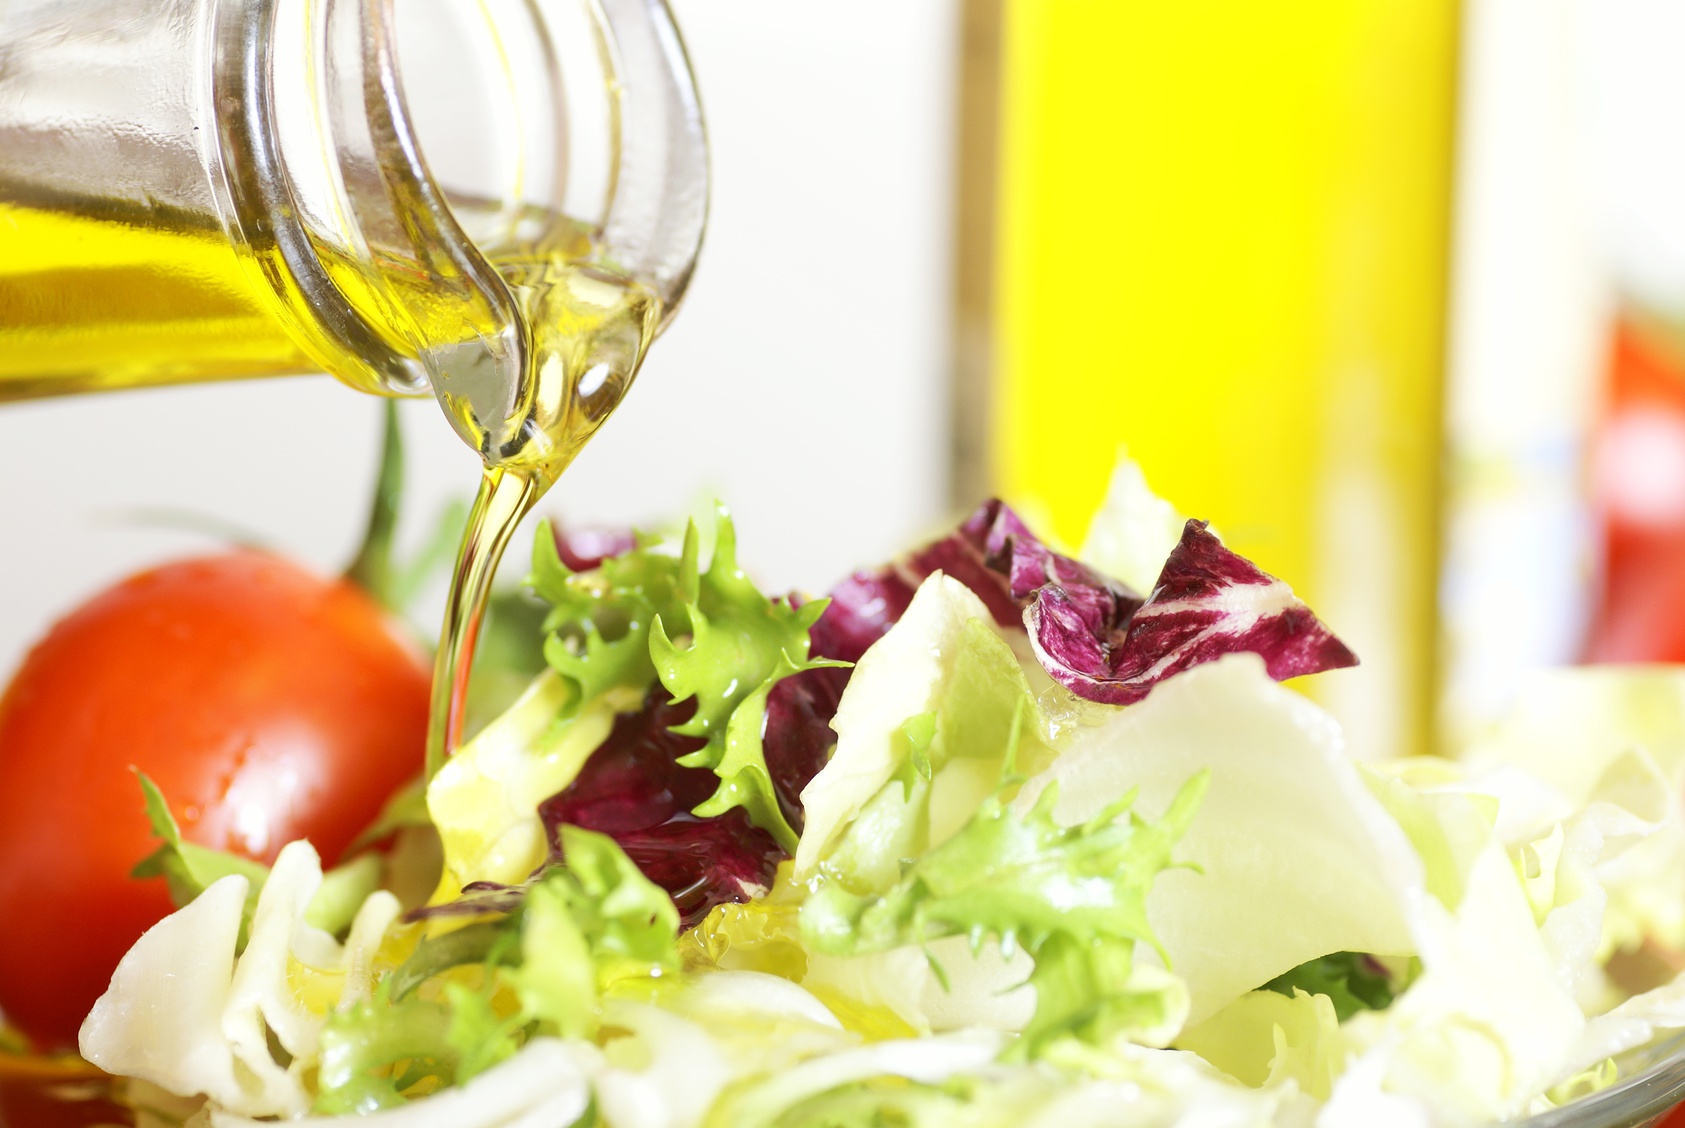 Histoire d’huiles – Booster vos salades en changeant de vinaigrette !